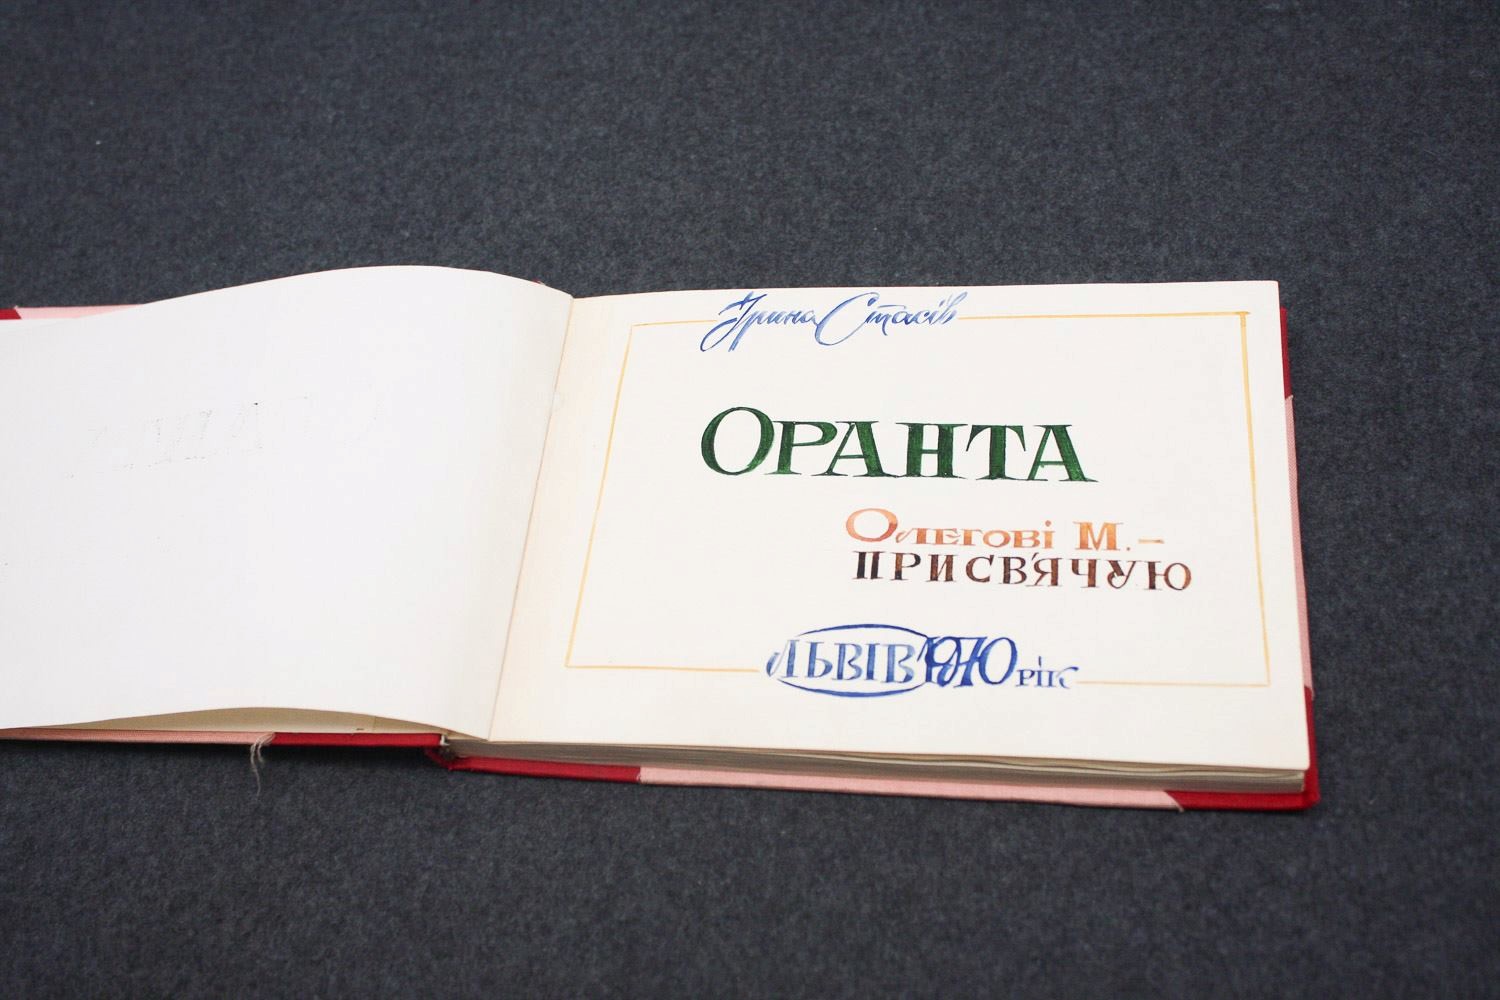 Stasiv-Kalynets, Iryna. Oranta, 1970. Samizdat manuscript. 